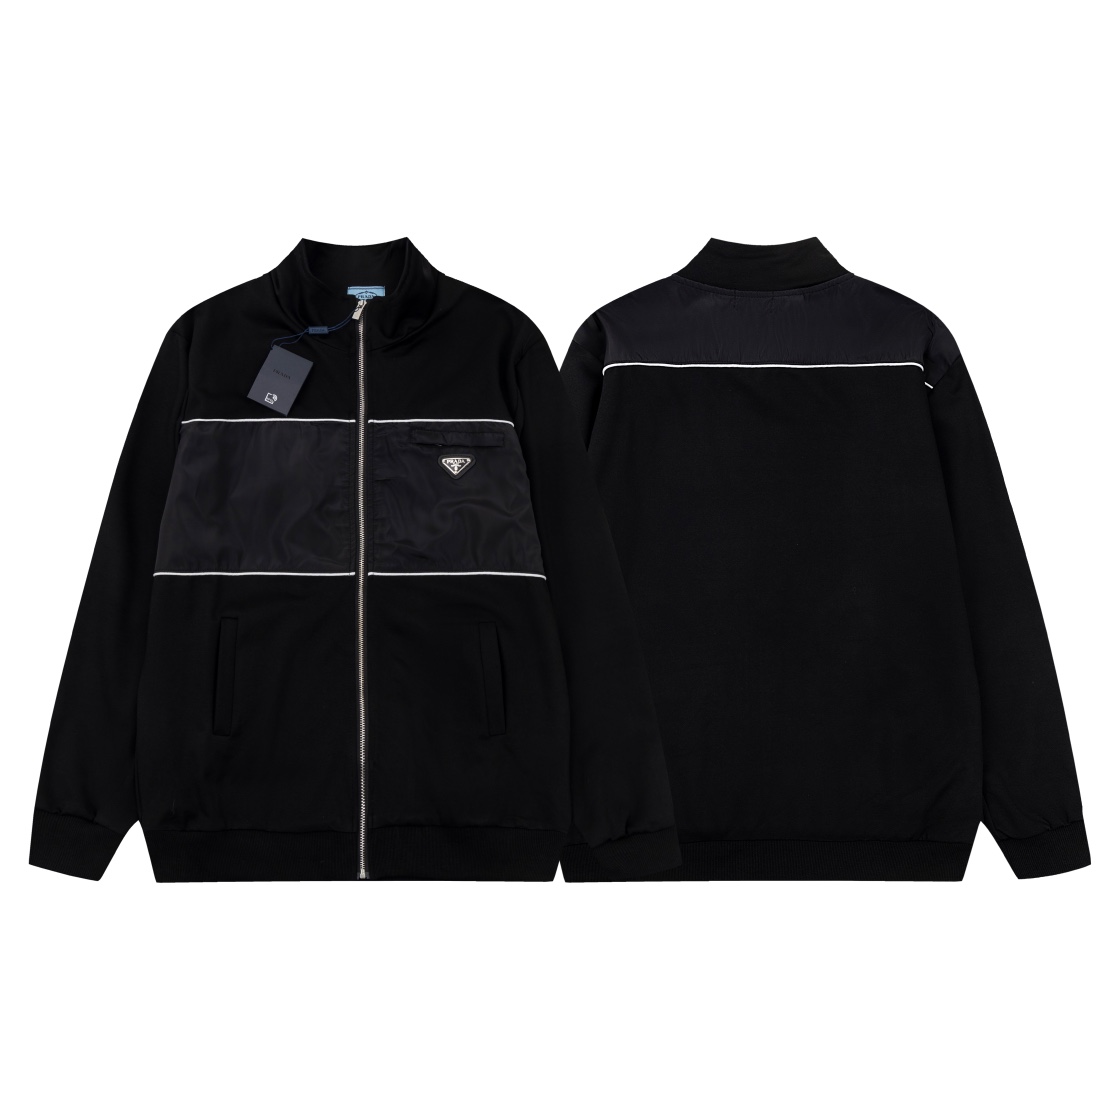 Prada Clothing Coats & Jackets Black White Splicing Unisex